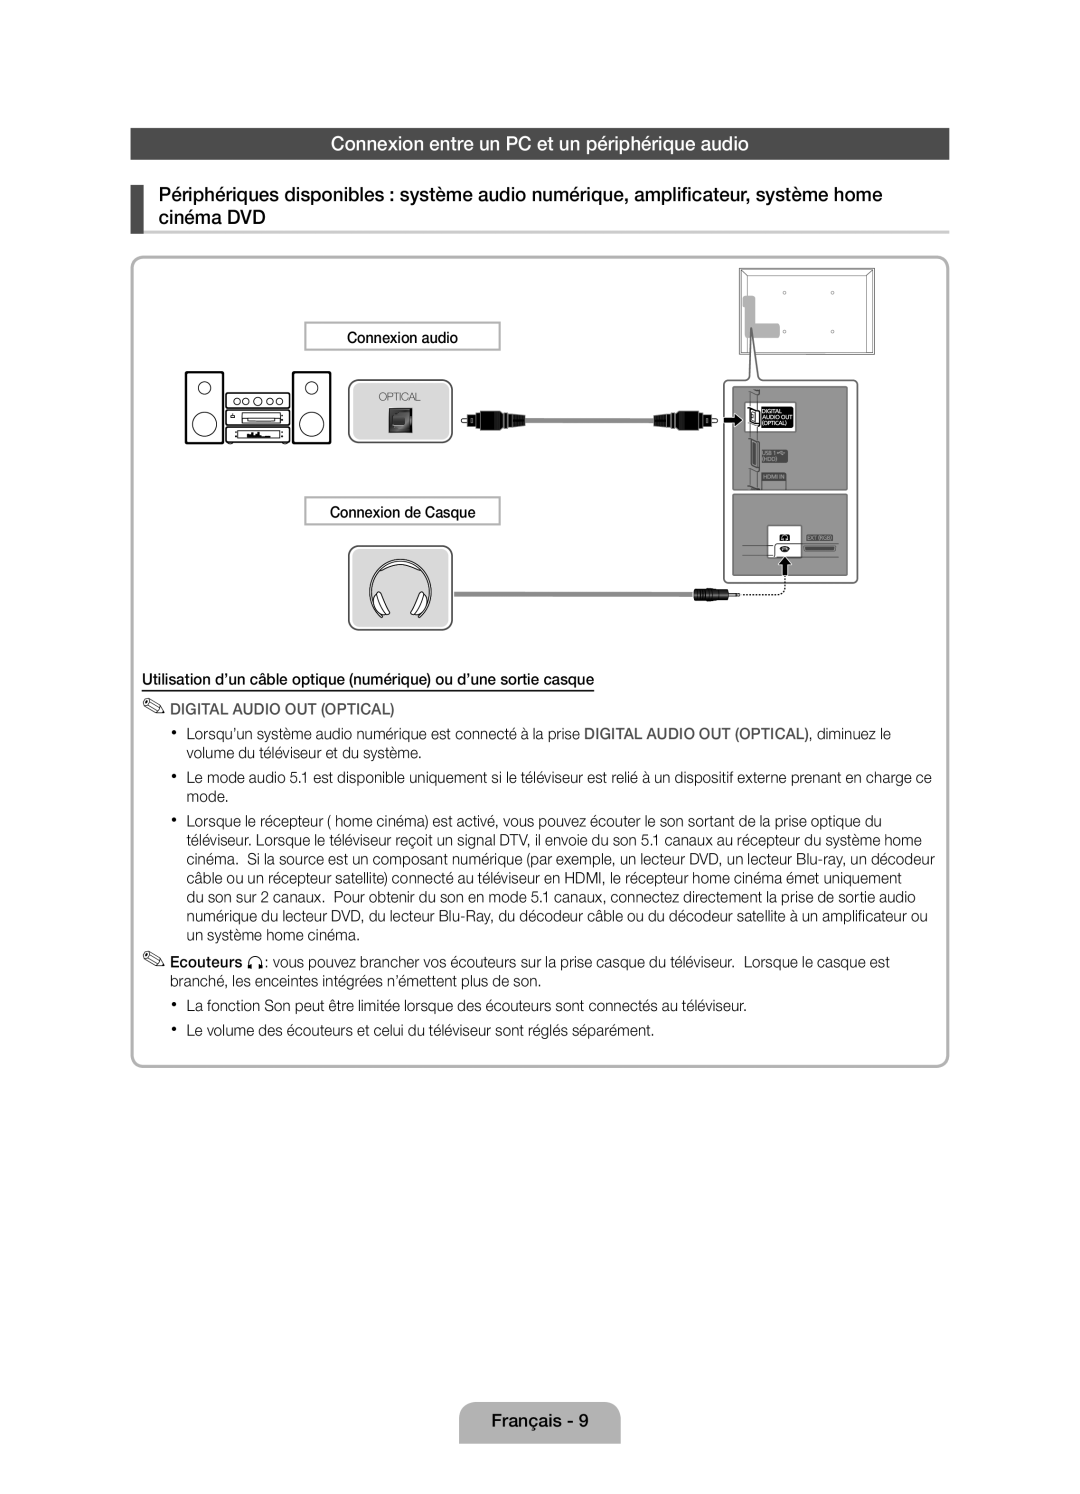 Samsung UE37D5000PWXXC, UE46D5000PWXZG manual Connexion entre un PC et un périphérique audio, Digital Audio Out Optical 